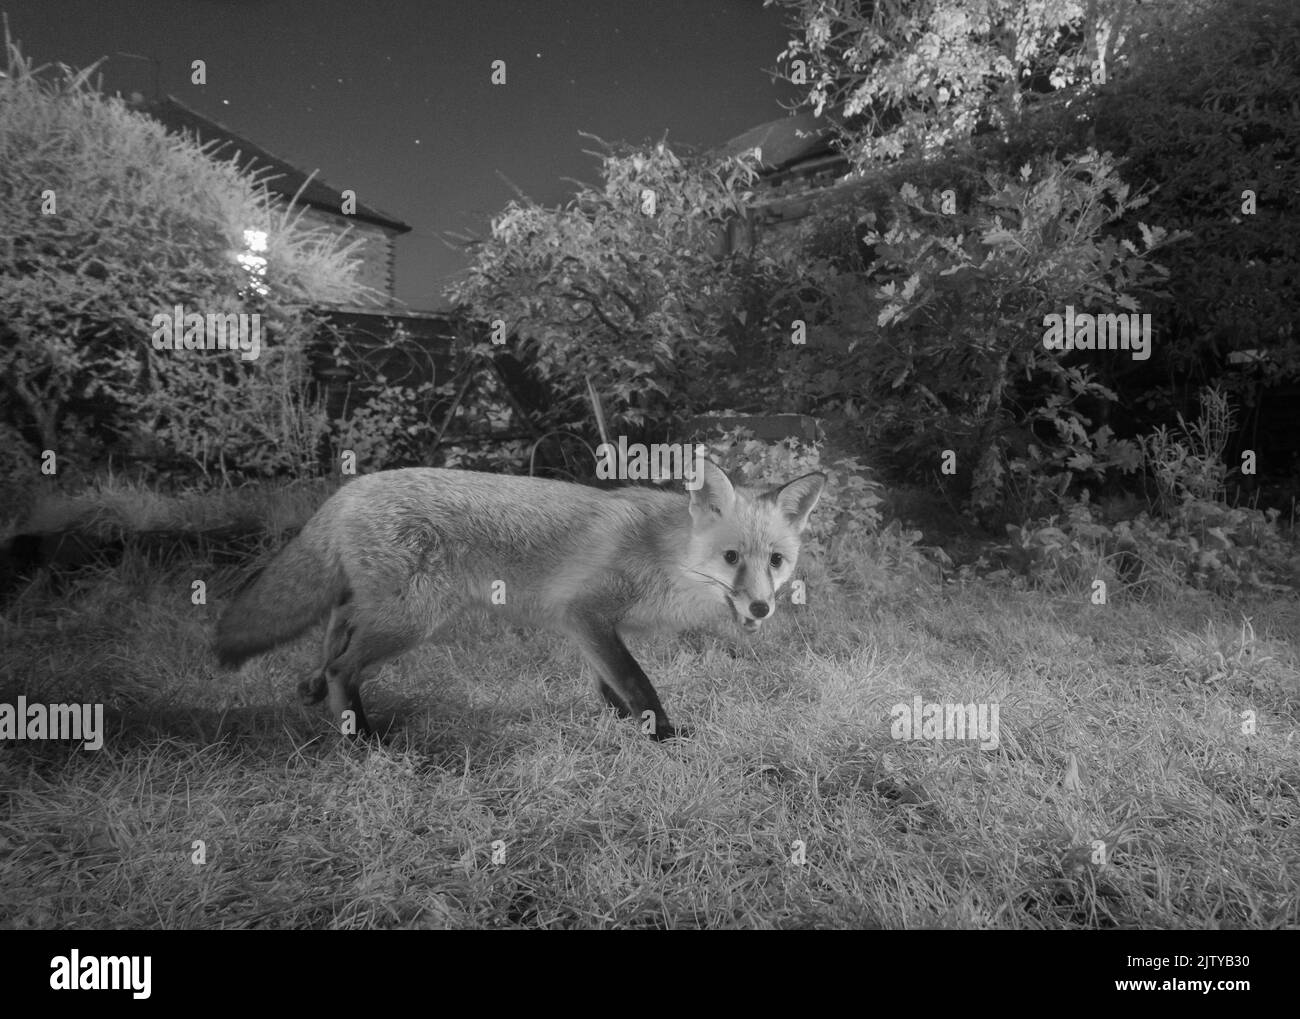 Renard roux (Vulpes vulpes) dans un jardin urbain, Grand Manchester. Novembre. Photographié avec un piège infrarouge converti. Banque D'Images